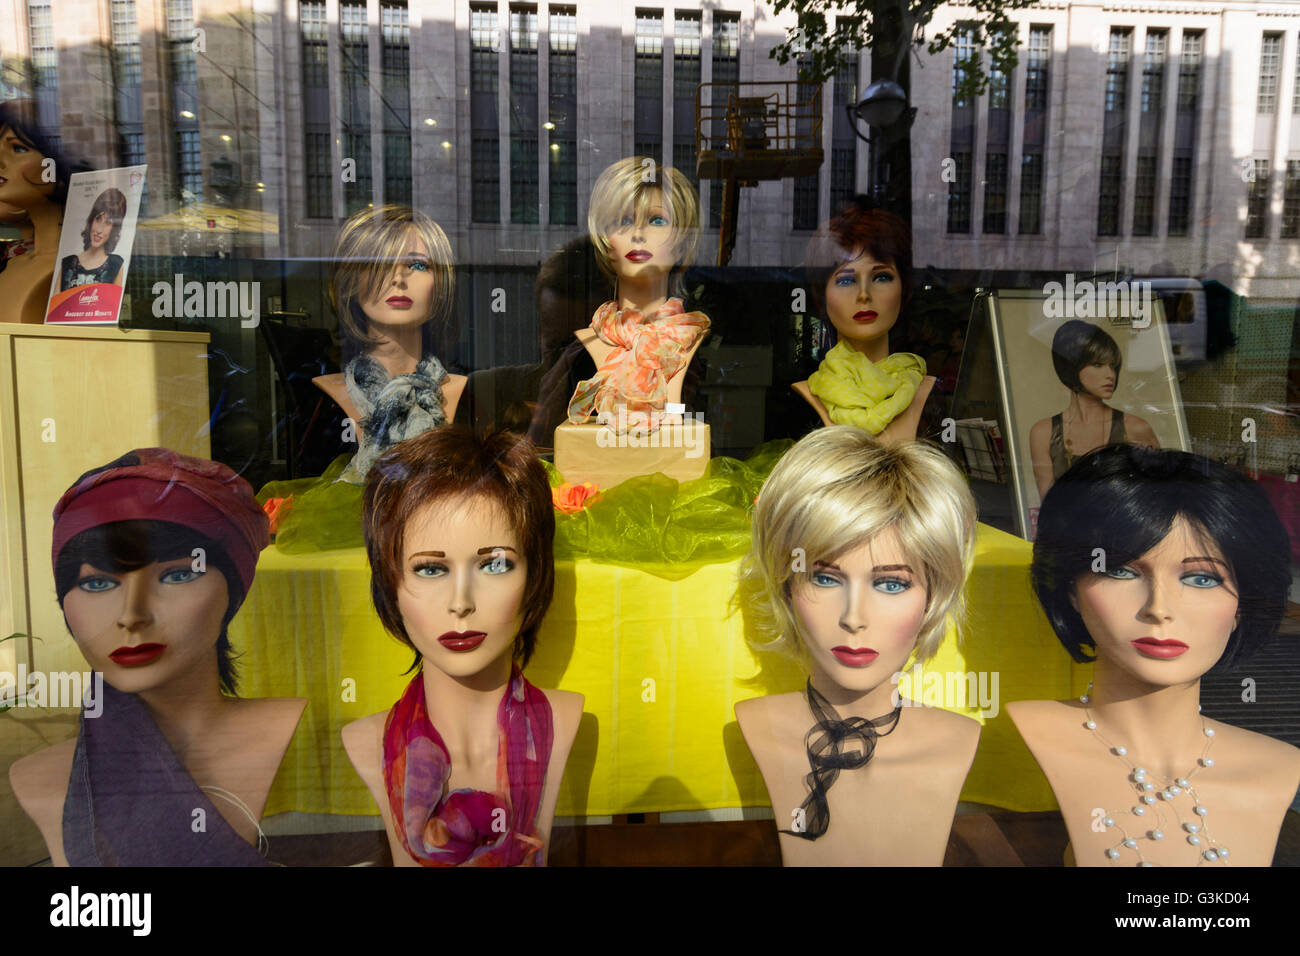 Wigs for women in a shop window, Germany, Baden-Württemberg, Kraichgau-Stromberg, Karlsruhe Stock Photo